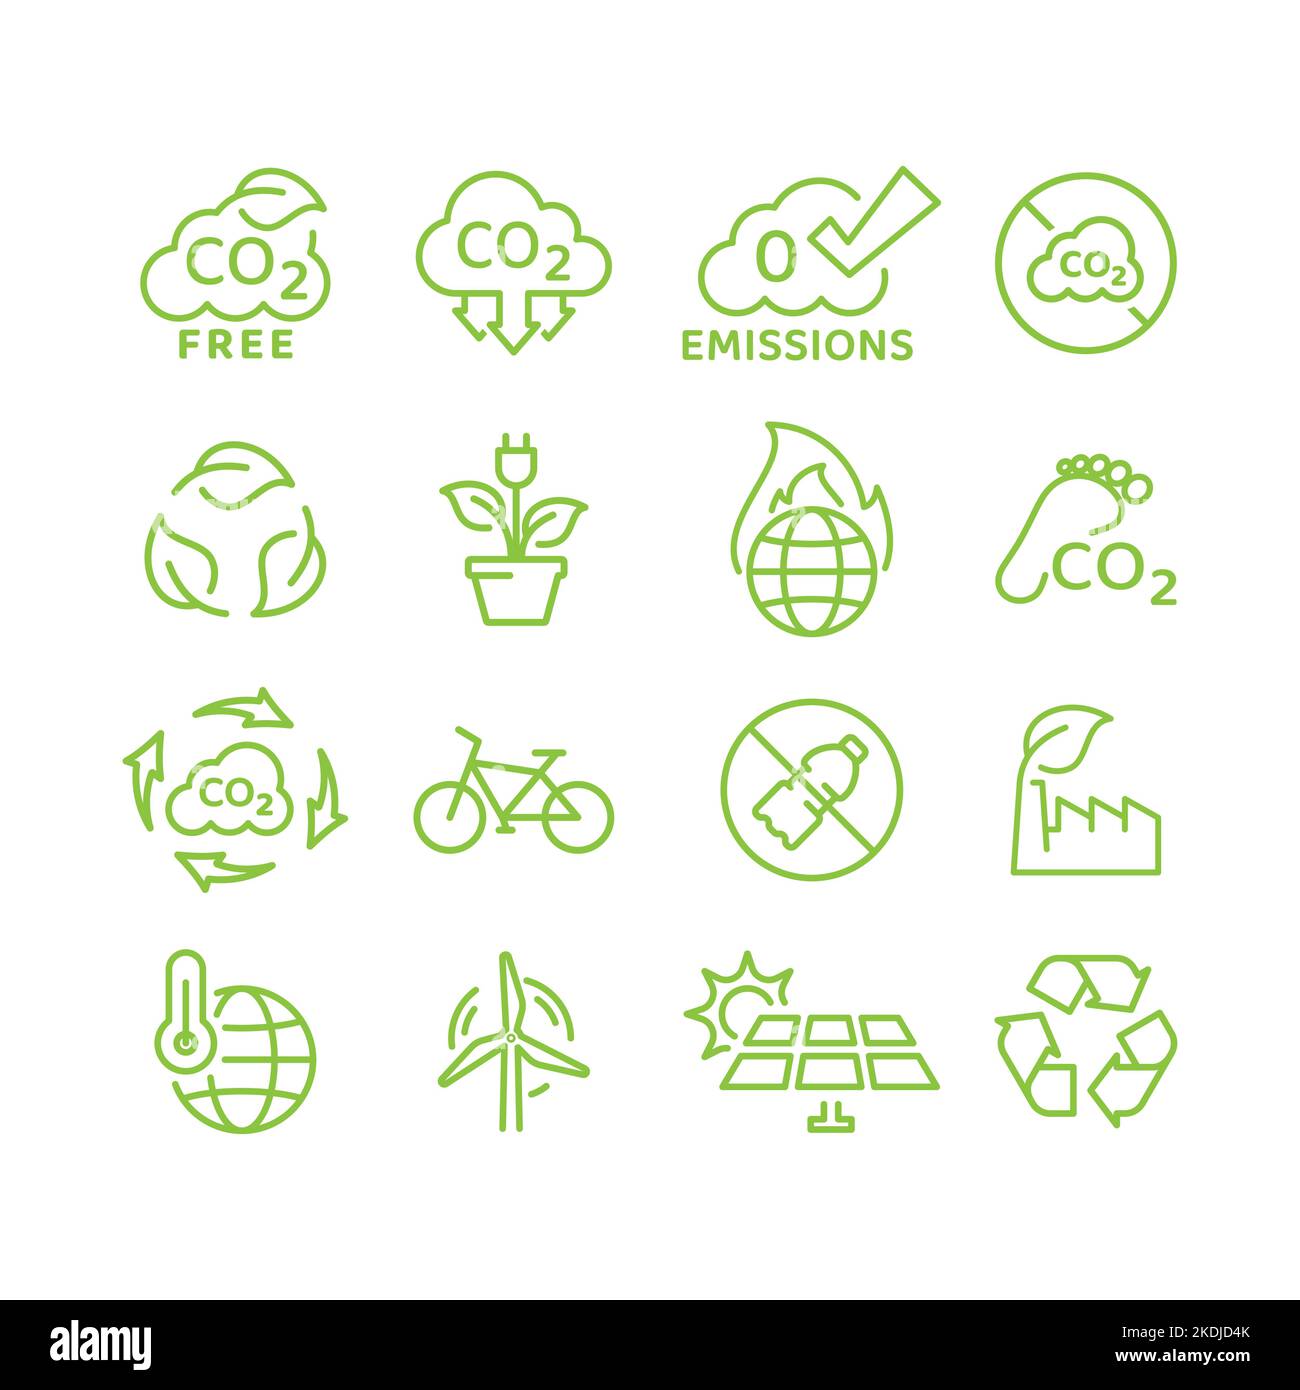 Null Emissionen, Vektor zur Reduzierung des CO2-Fußabdrucks, Symbolsatz. Symbole für Ökologie und Umweltschutz. Stock Vektor